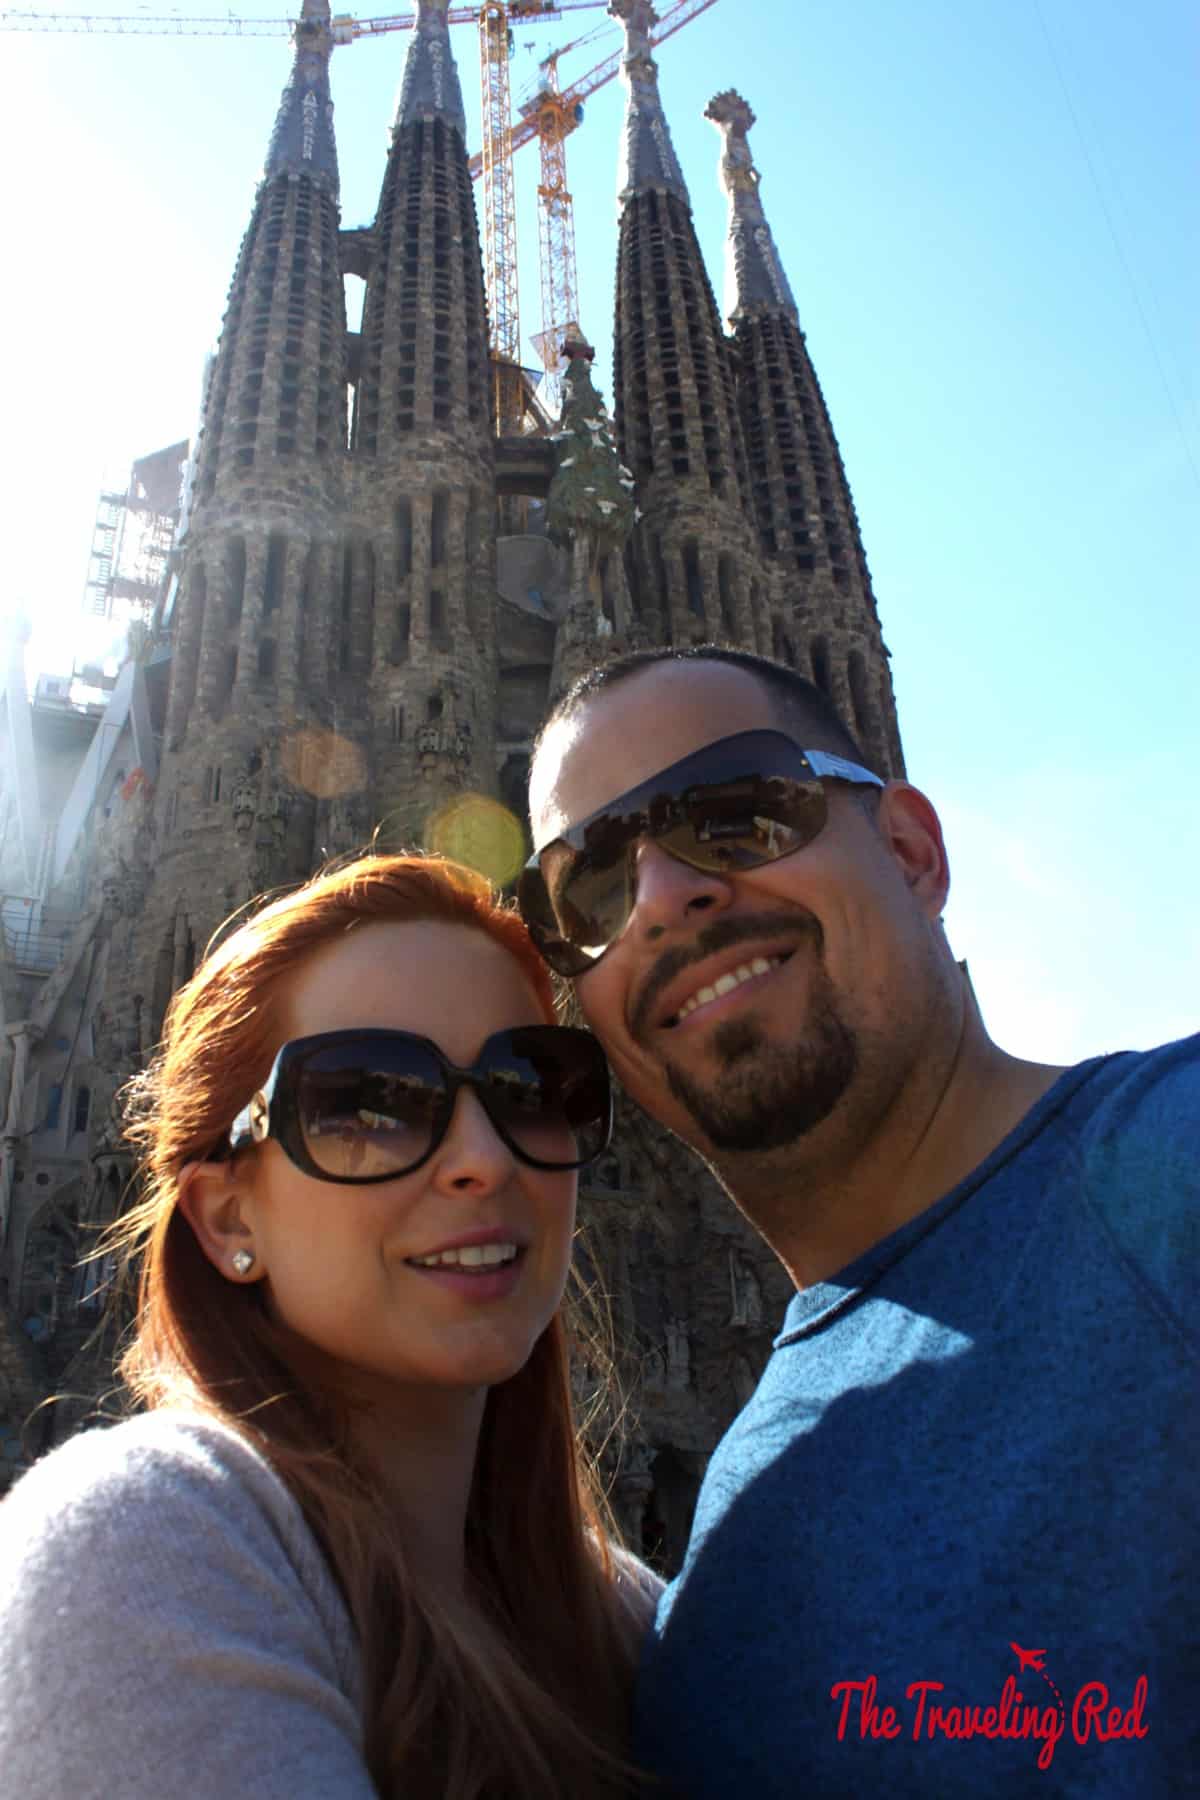 The forever under construction La Segrada Familia in Barcelona, Spain.